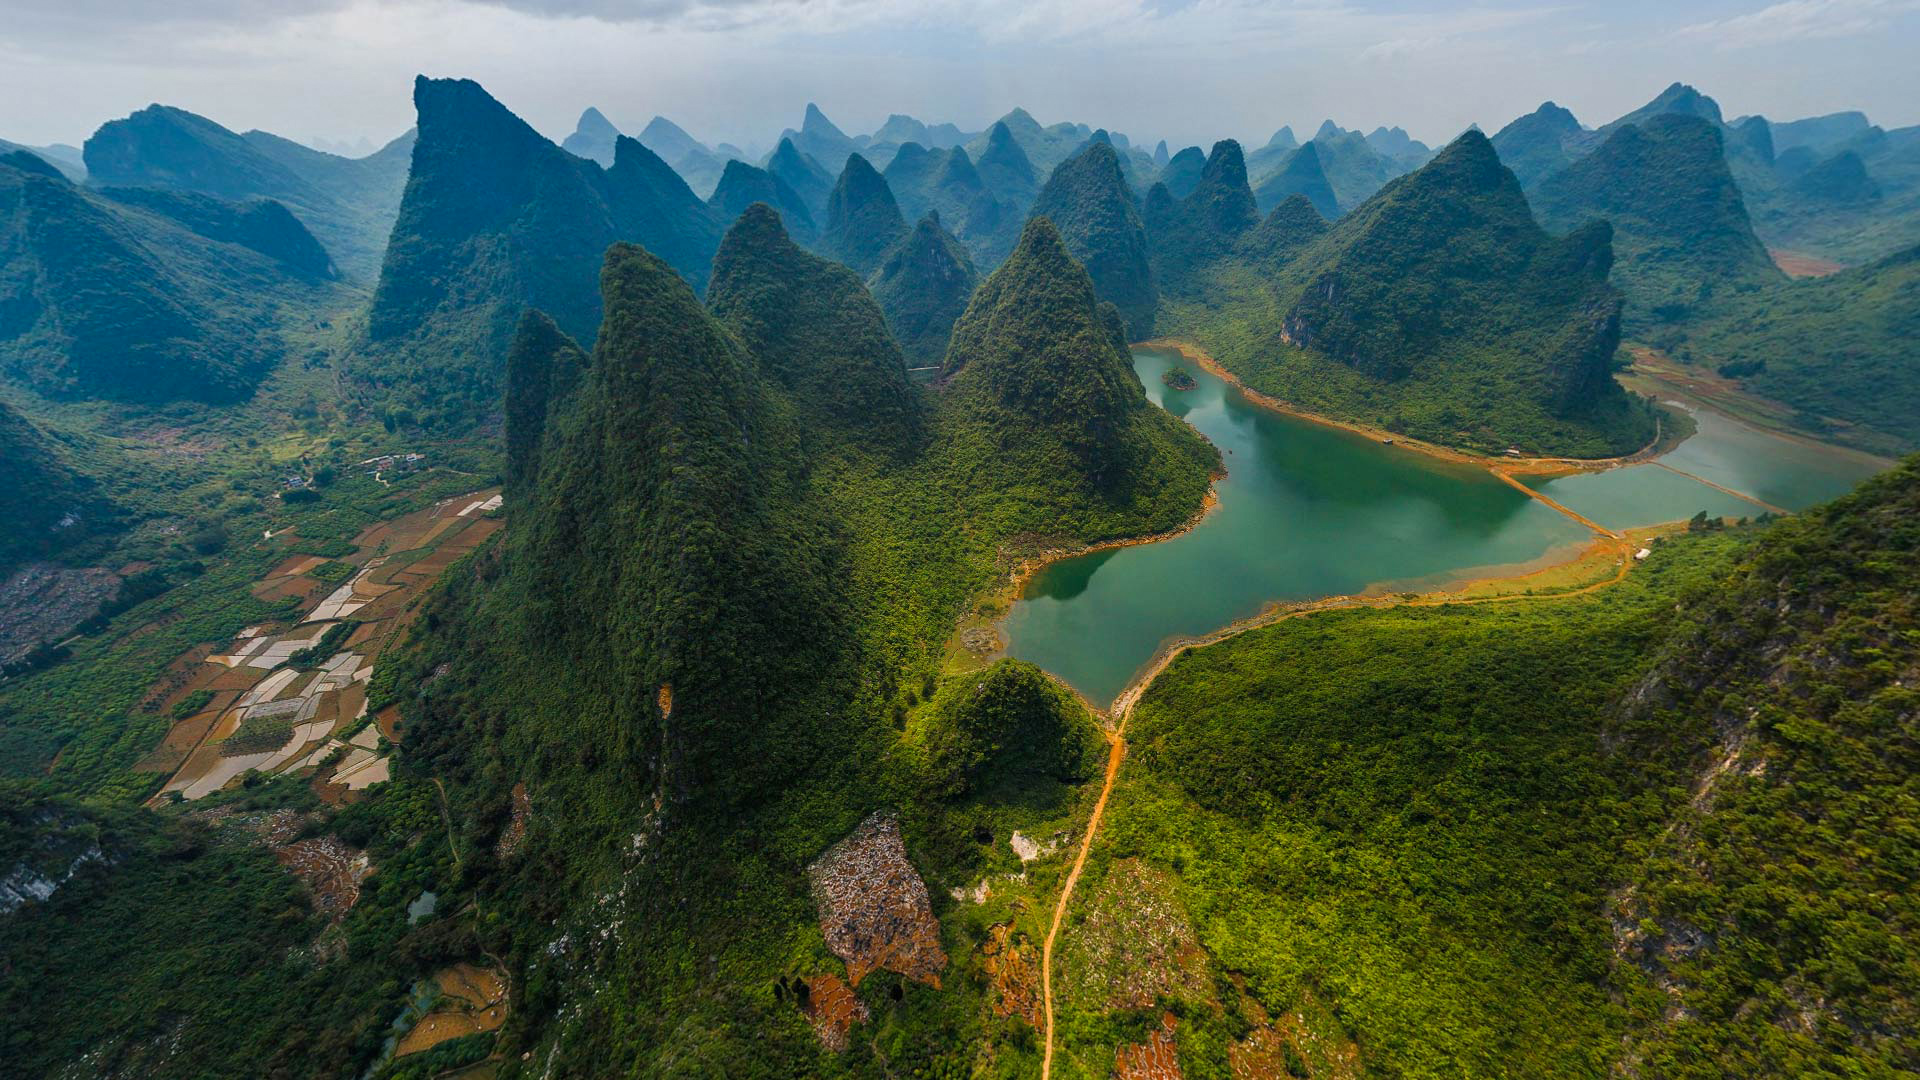 The green hills around Li River, China